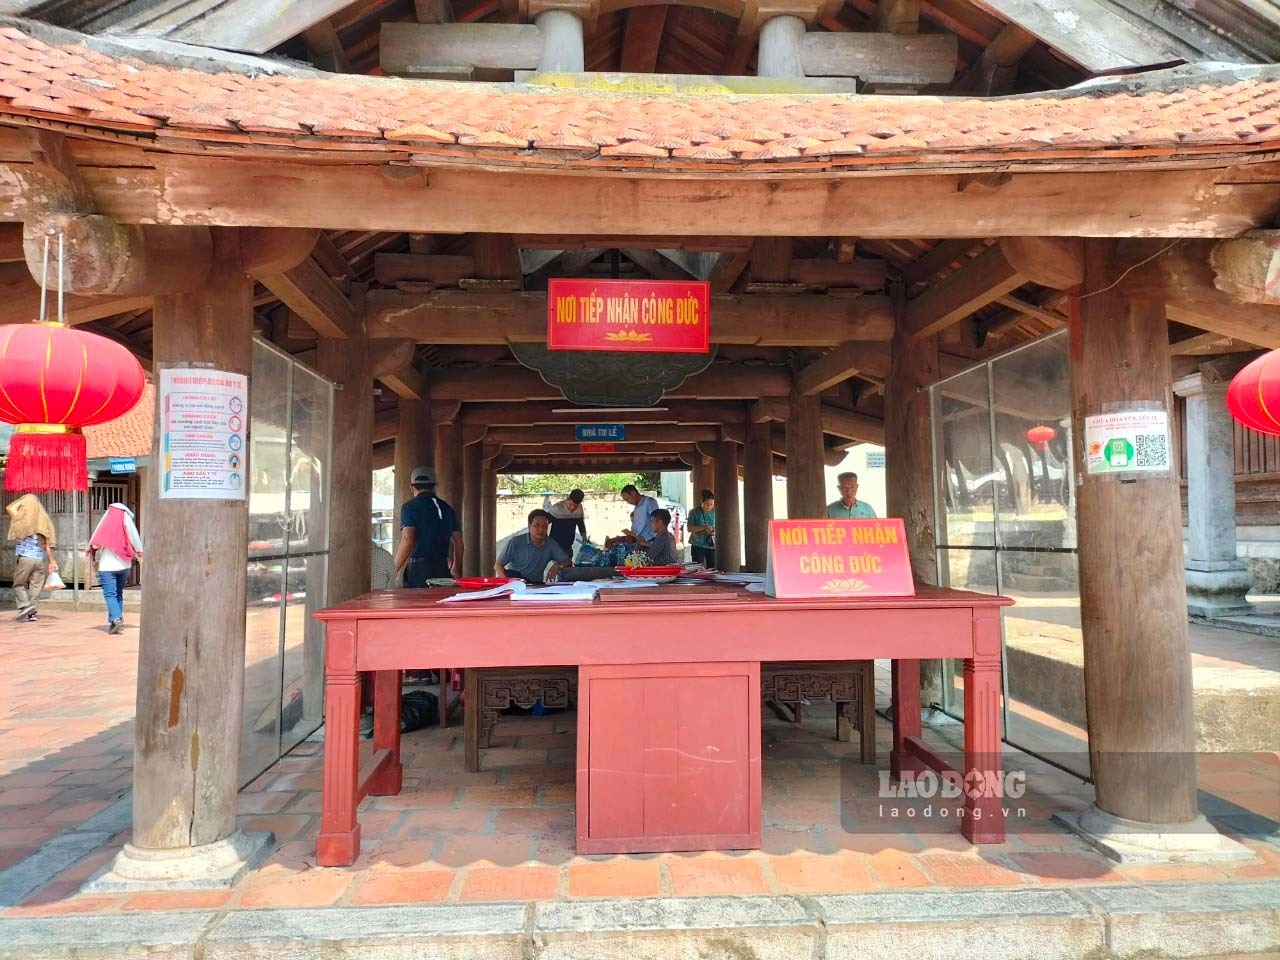 Nơi tiếp nhận công đức tại chùa Hoa Yên, Yên Tử. Ảnh: Nguyễn Hùng